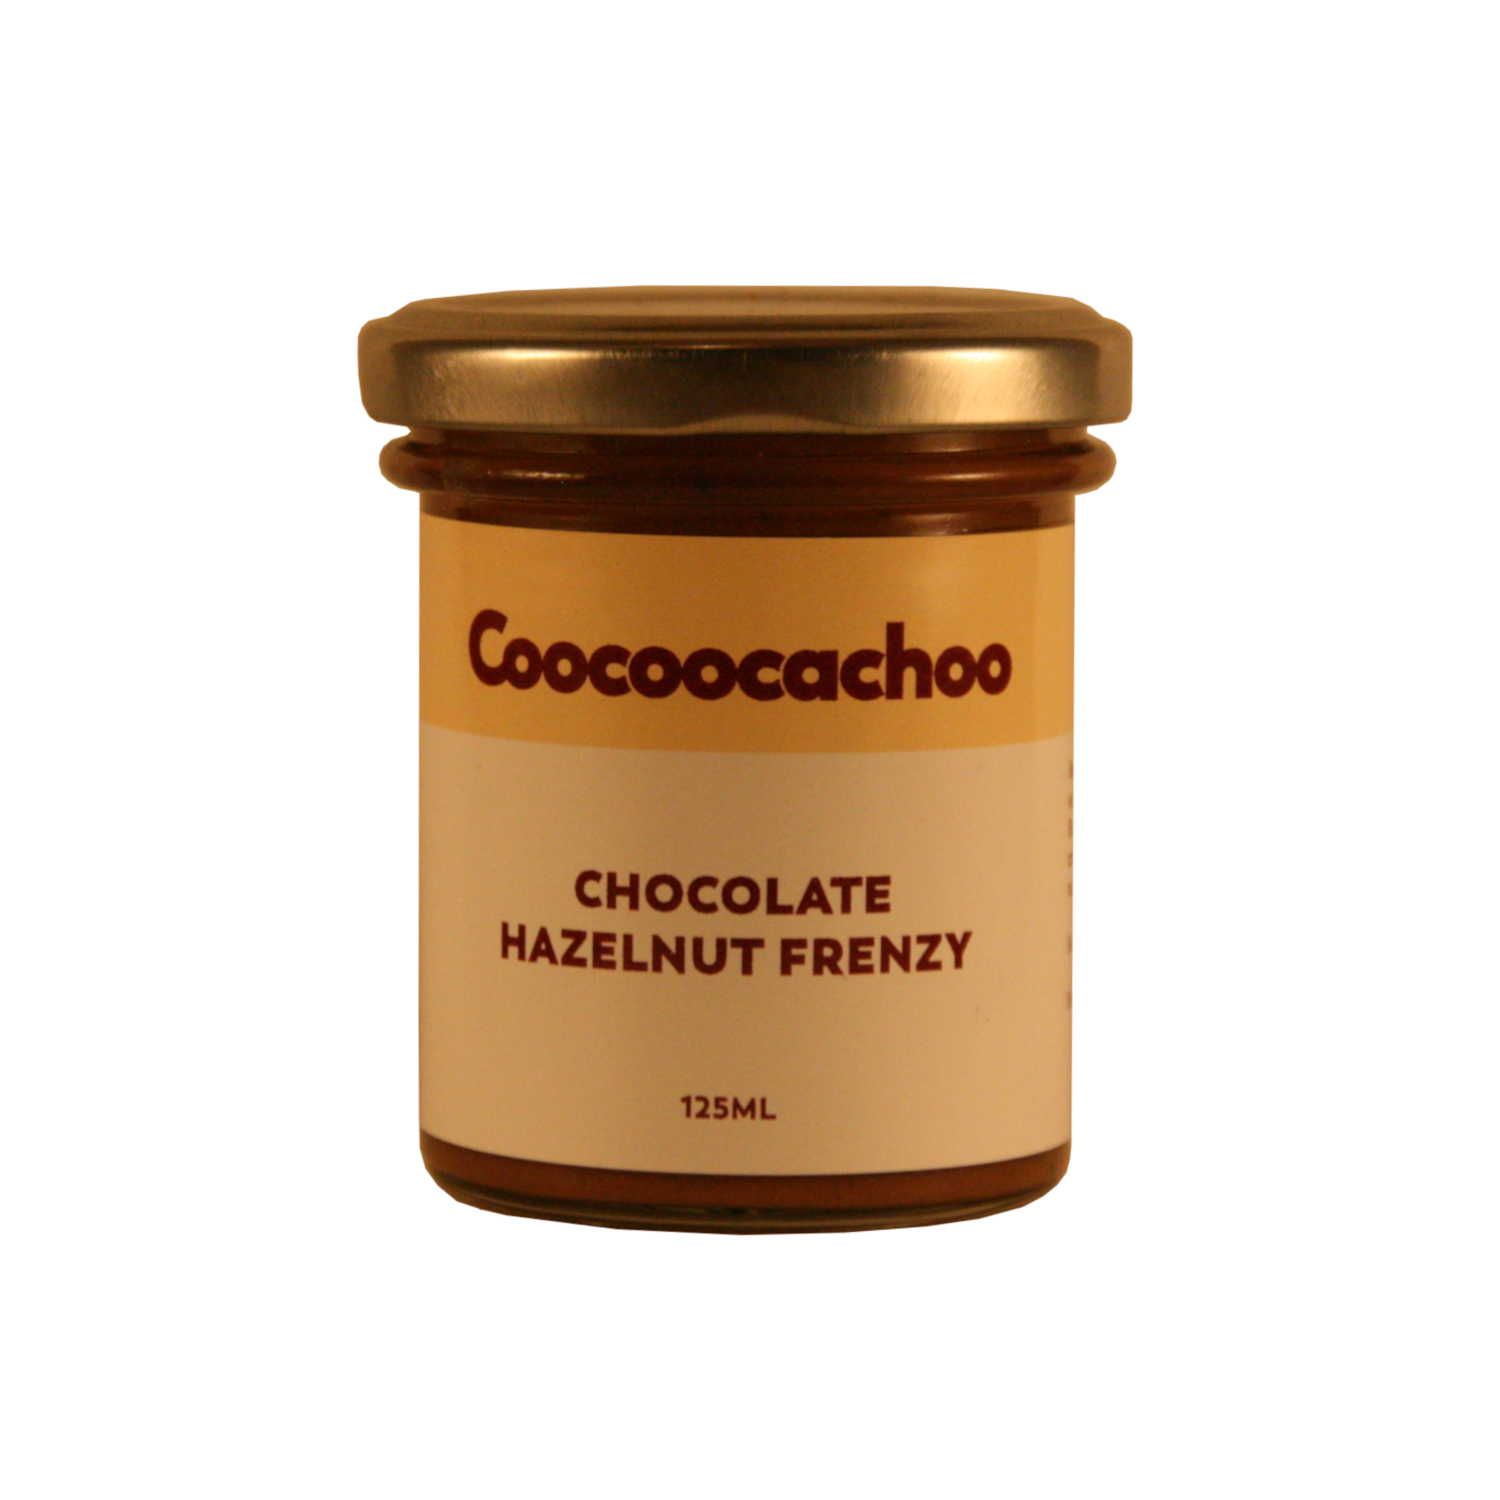 Chocolate Hazelnut Frenzy 125ml